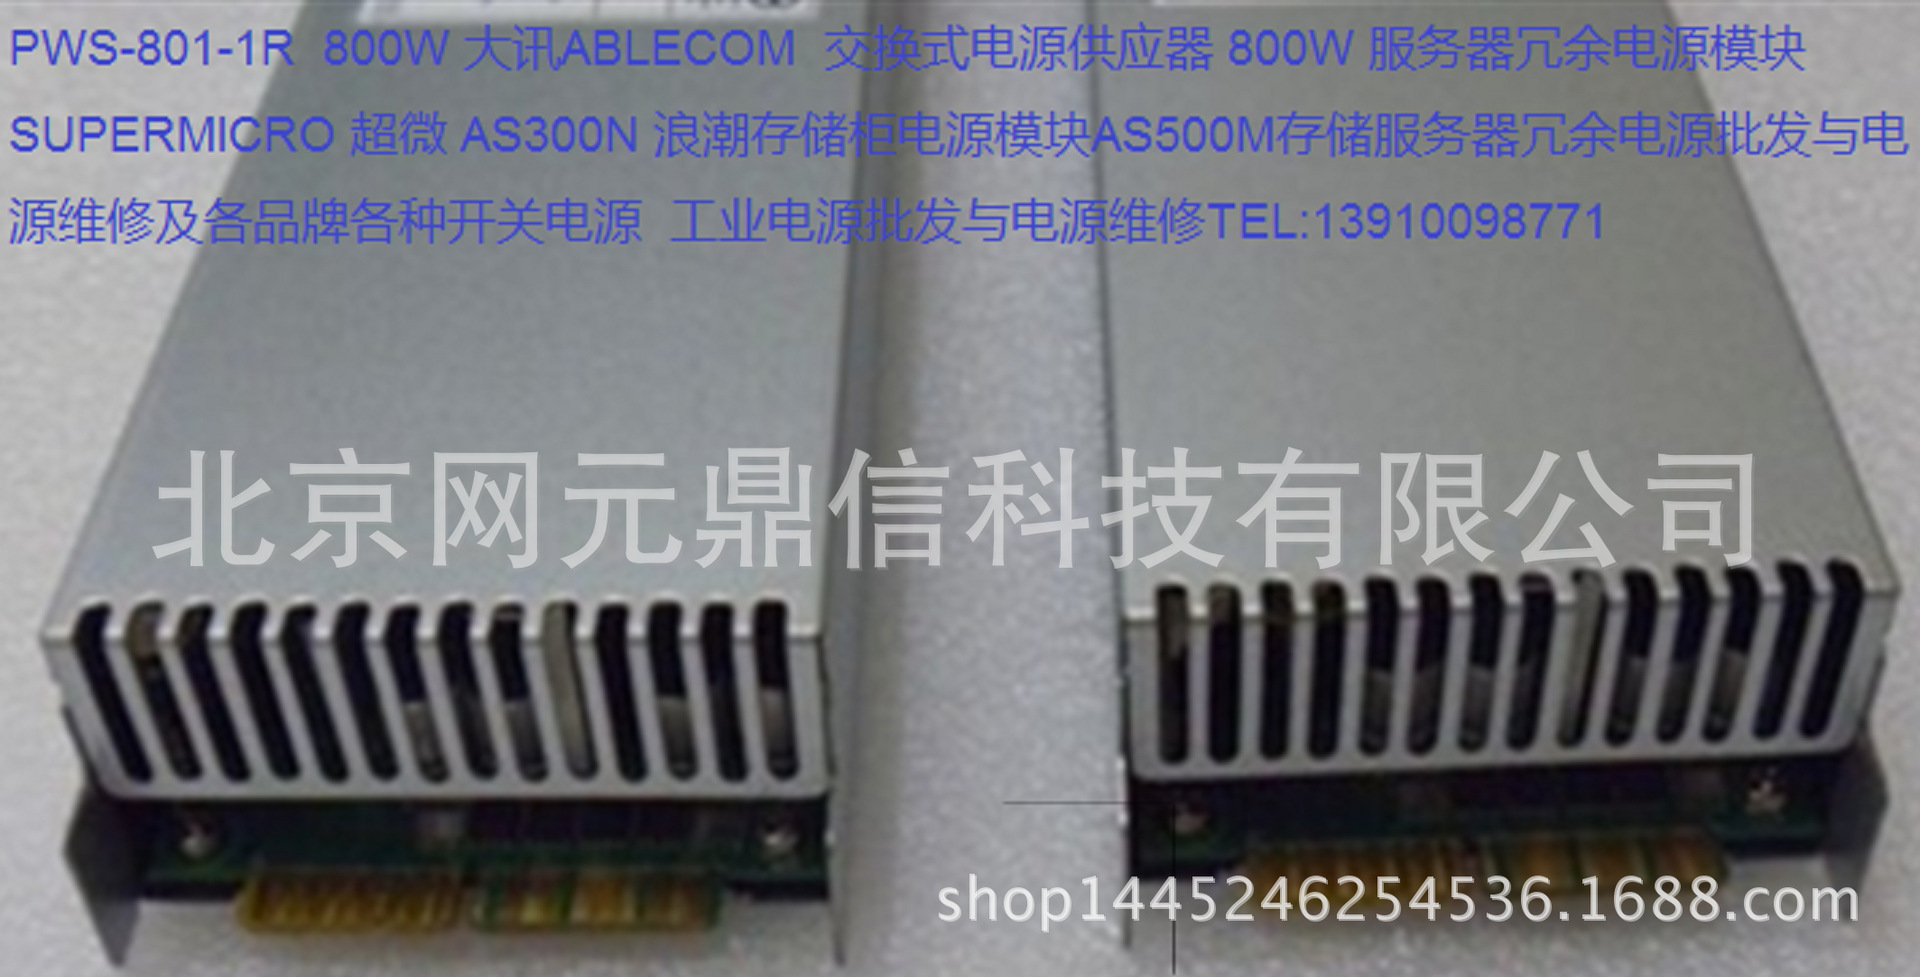 PWS-801-1R服务器冗余电源